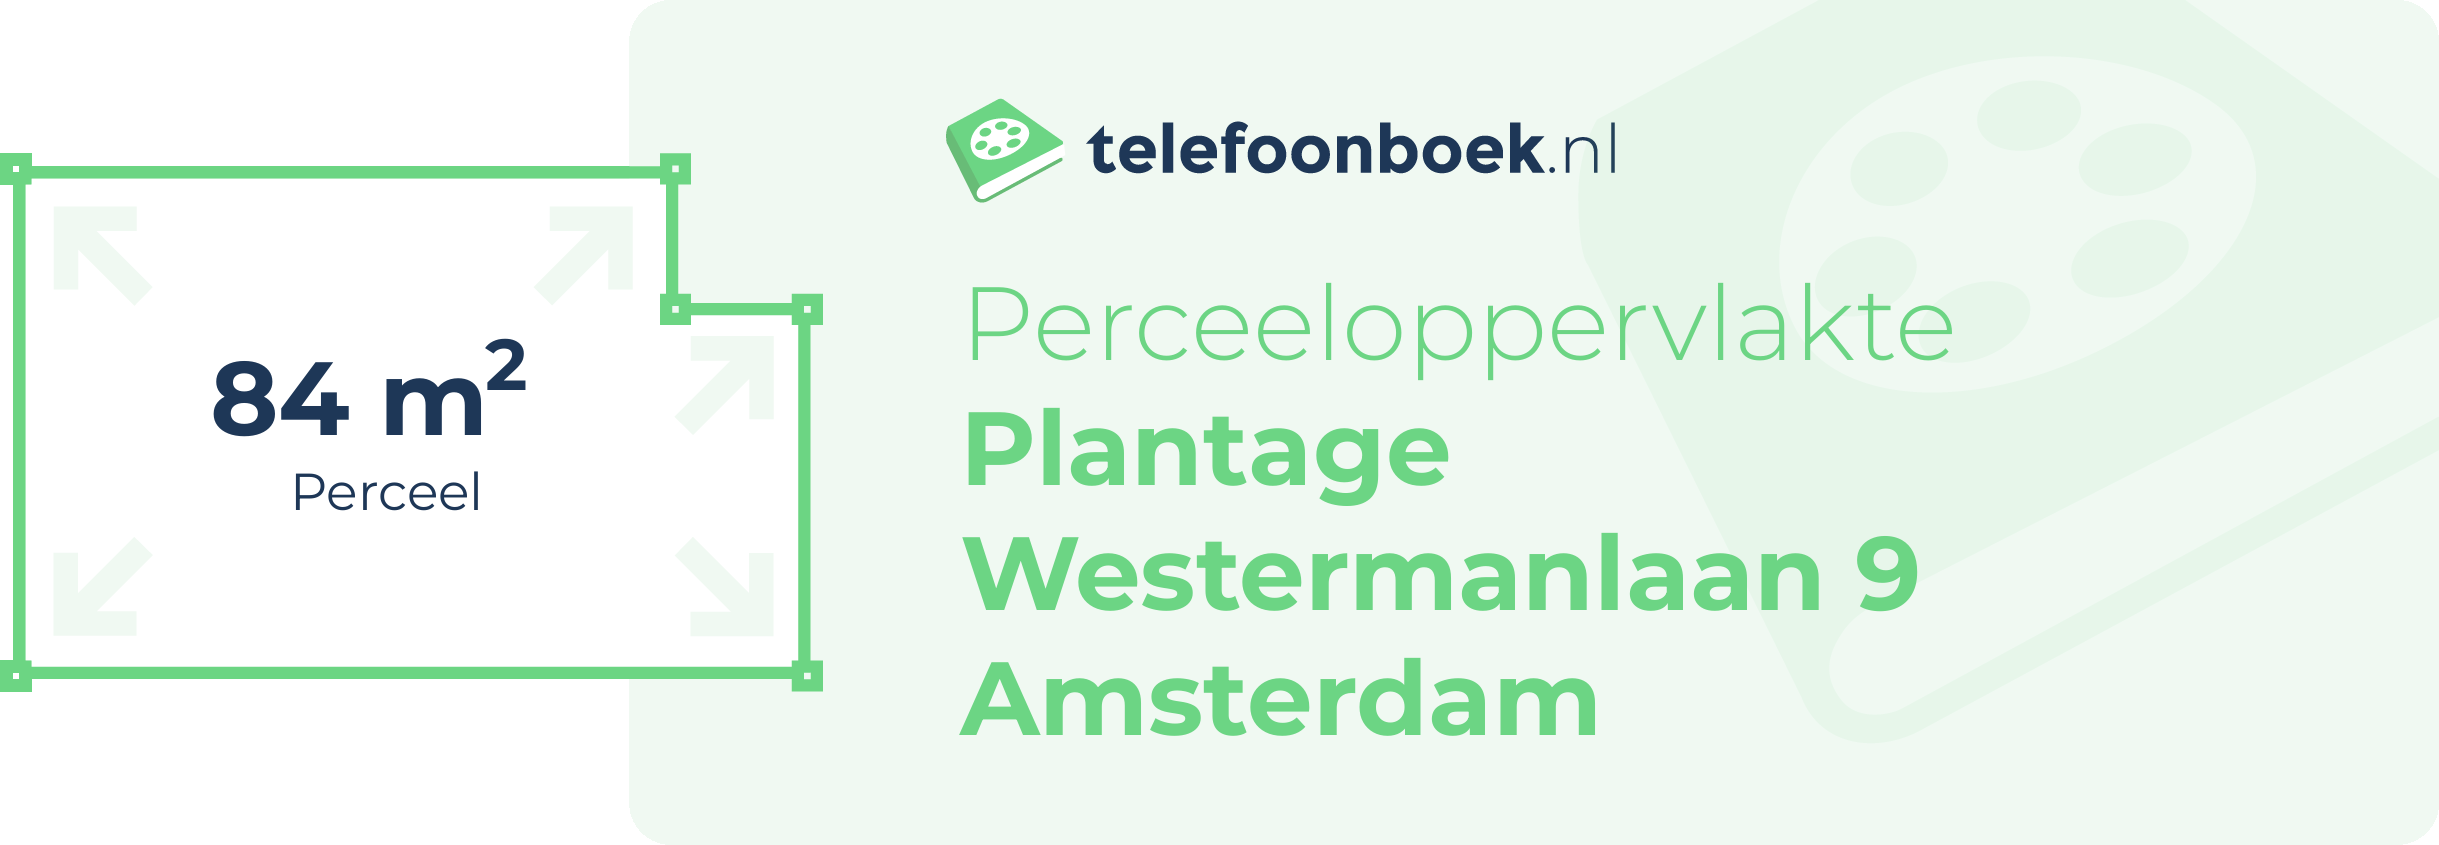 Perceeloppervlakte Plantage Westermanlaan 9 Amsterdam